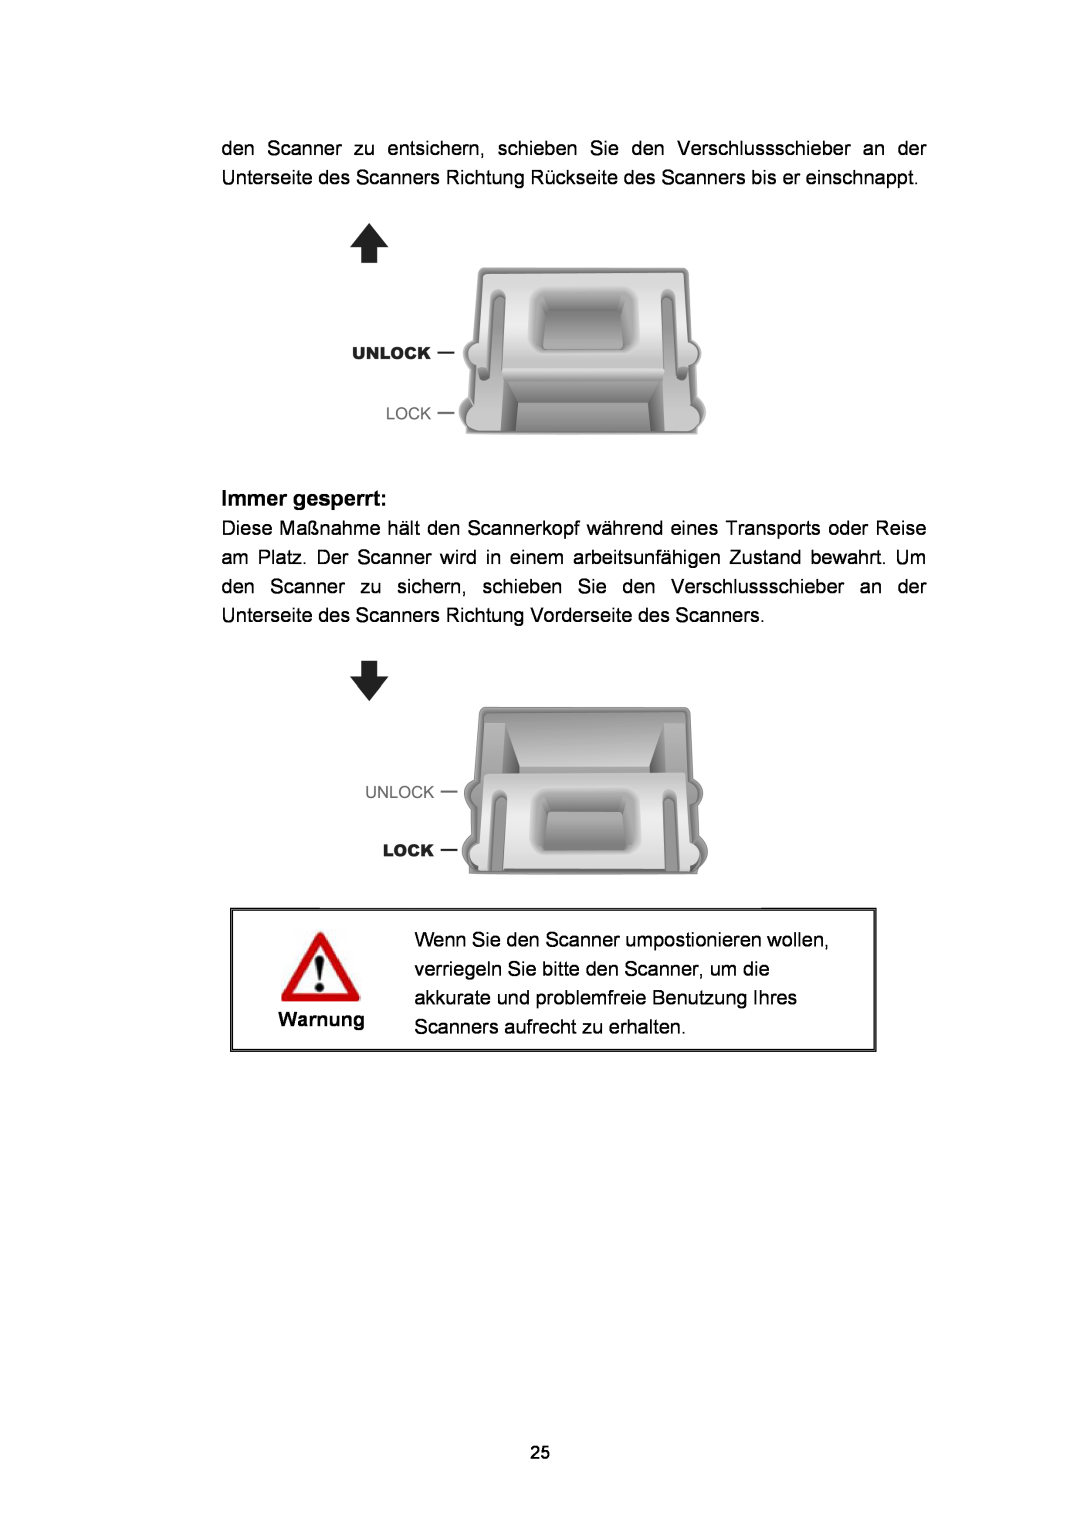 Plustek Scanner-Benutzerhandbuch, A360 manual Immer gesperrt, Warnung 